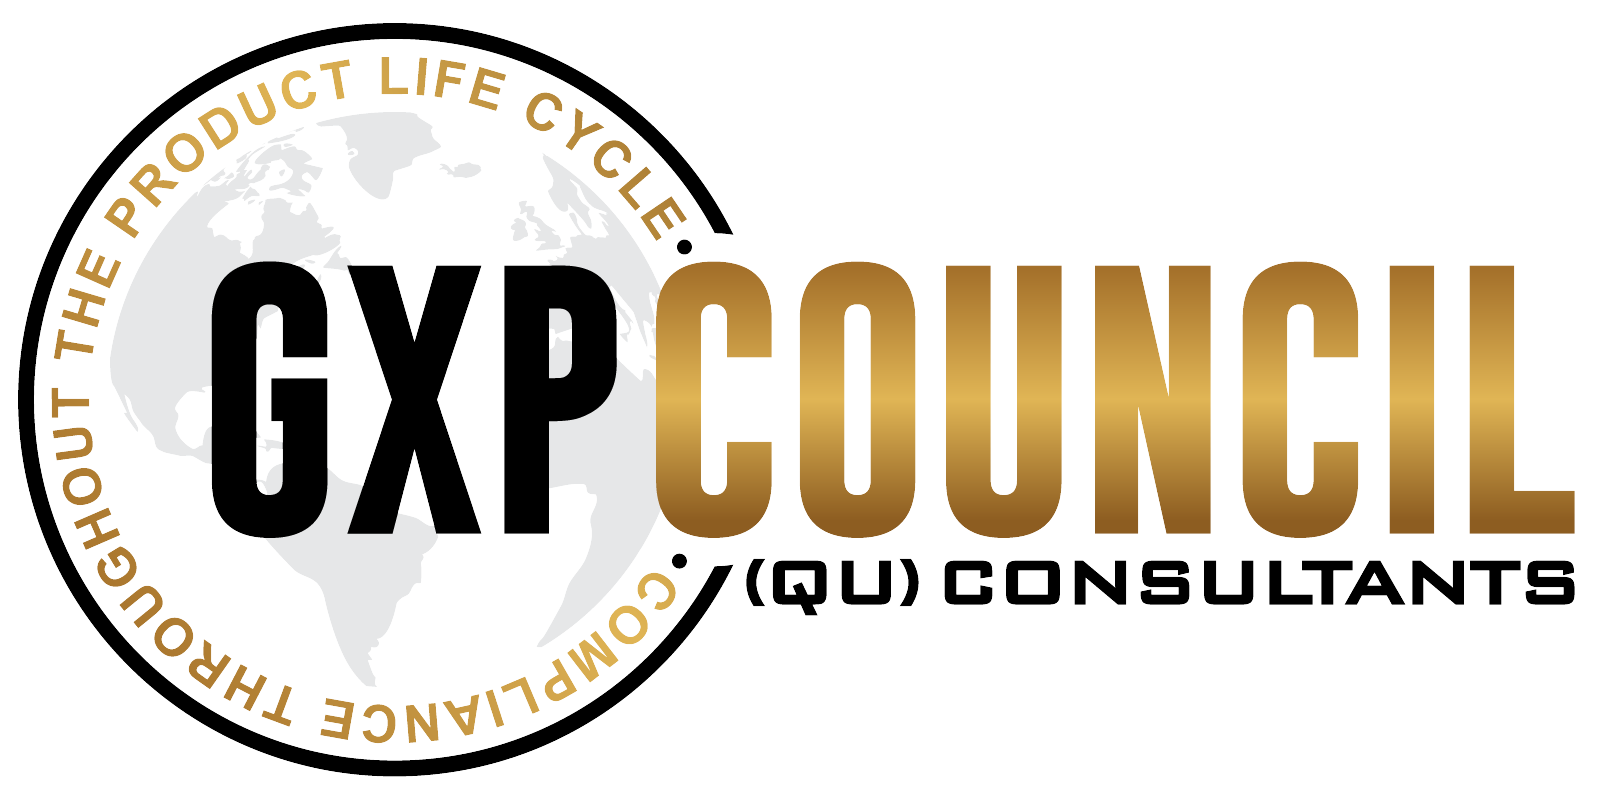 GXP Council